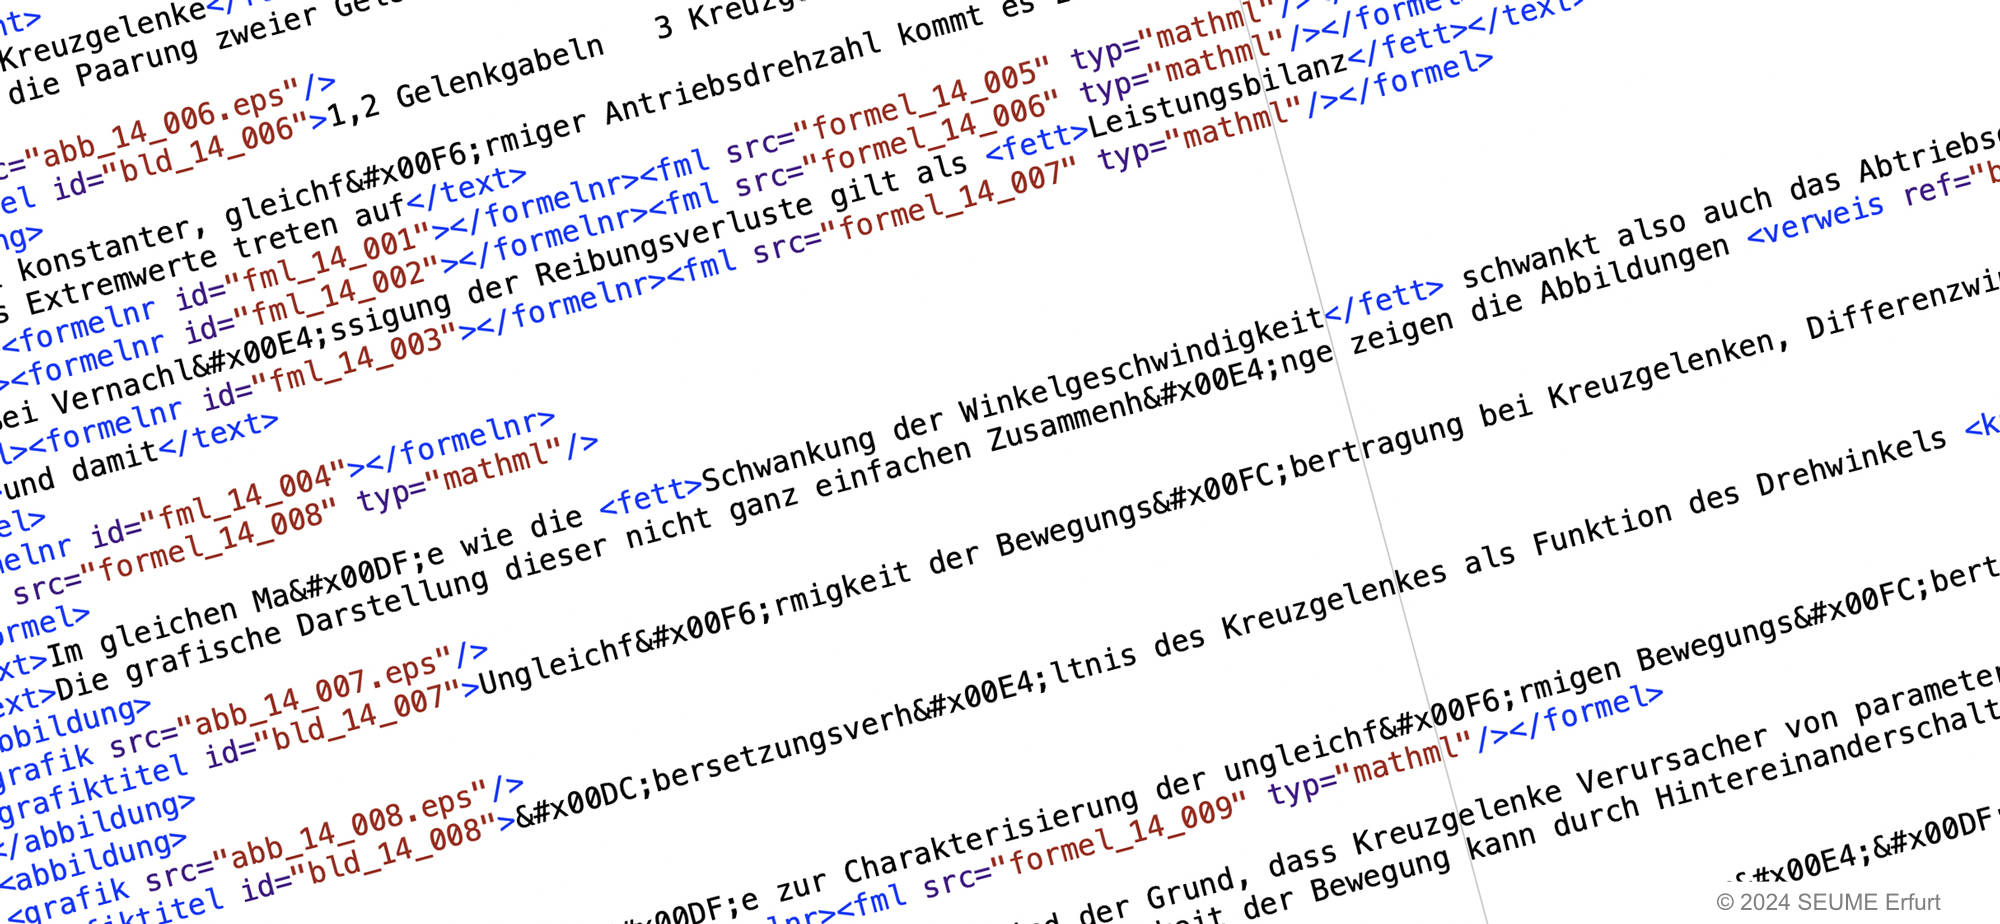 Abbildung eines Auszugs von XML-Daten in der Textansicht.